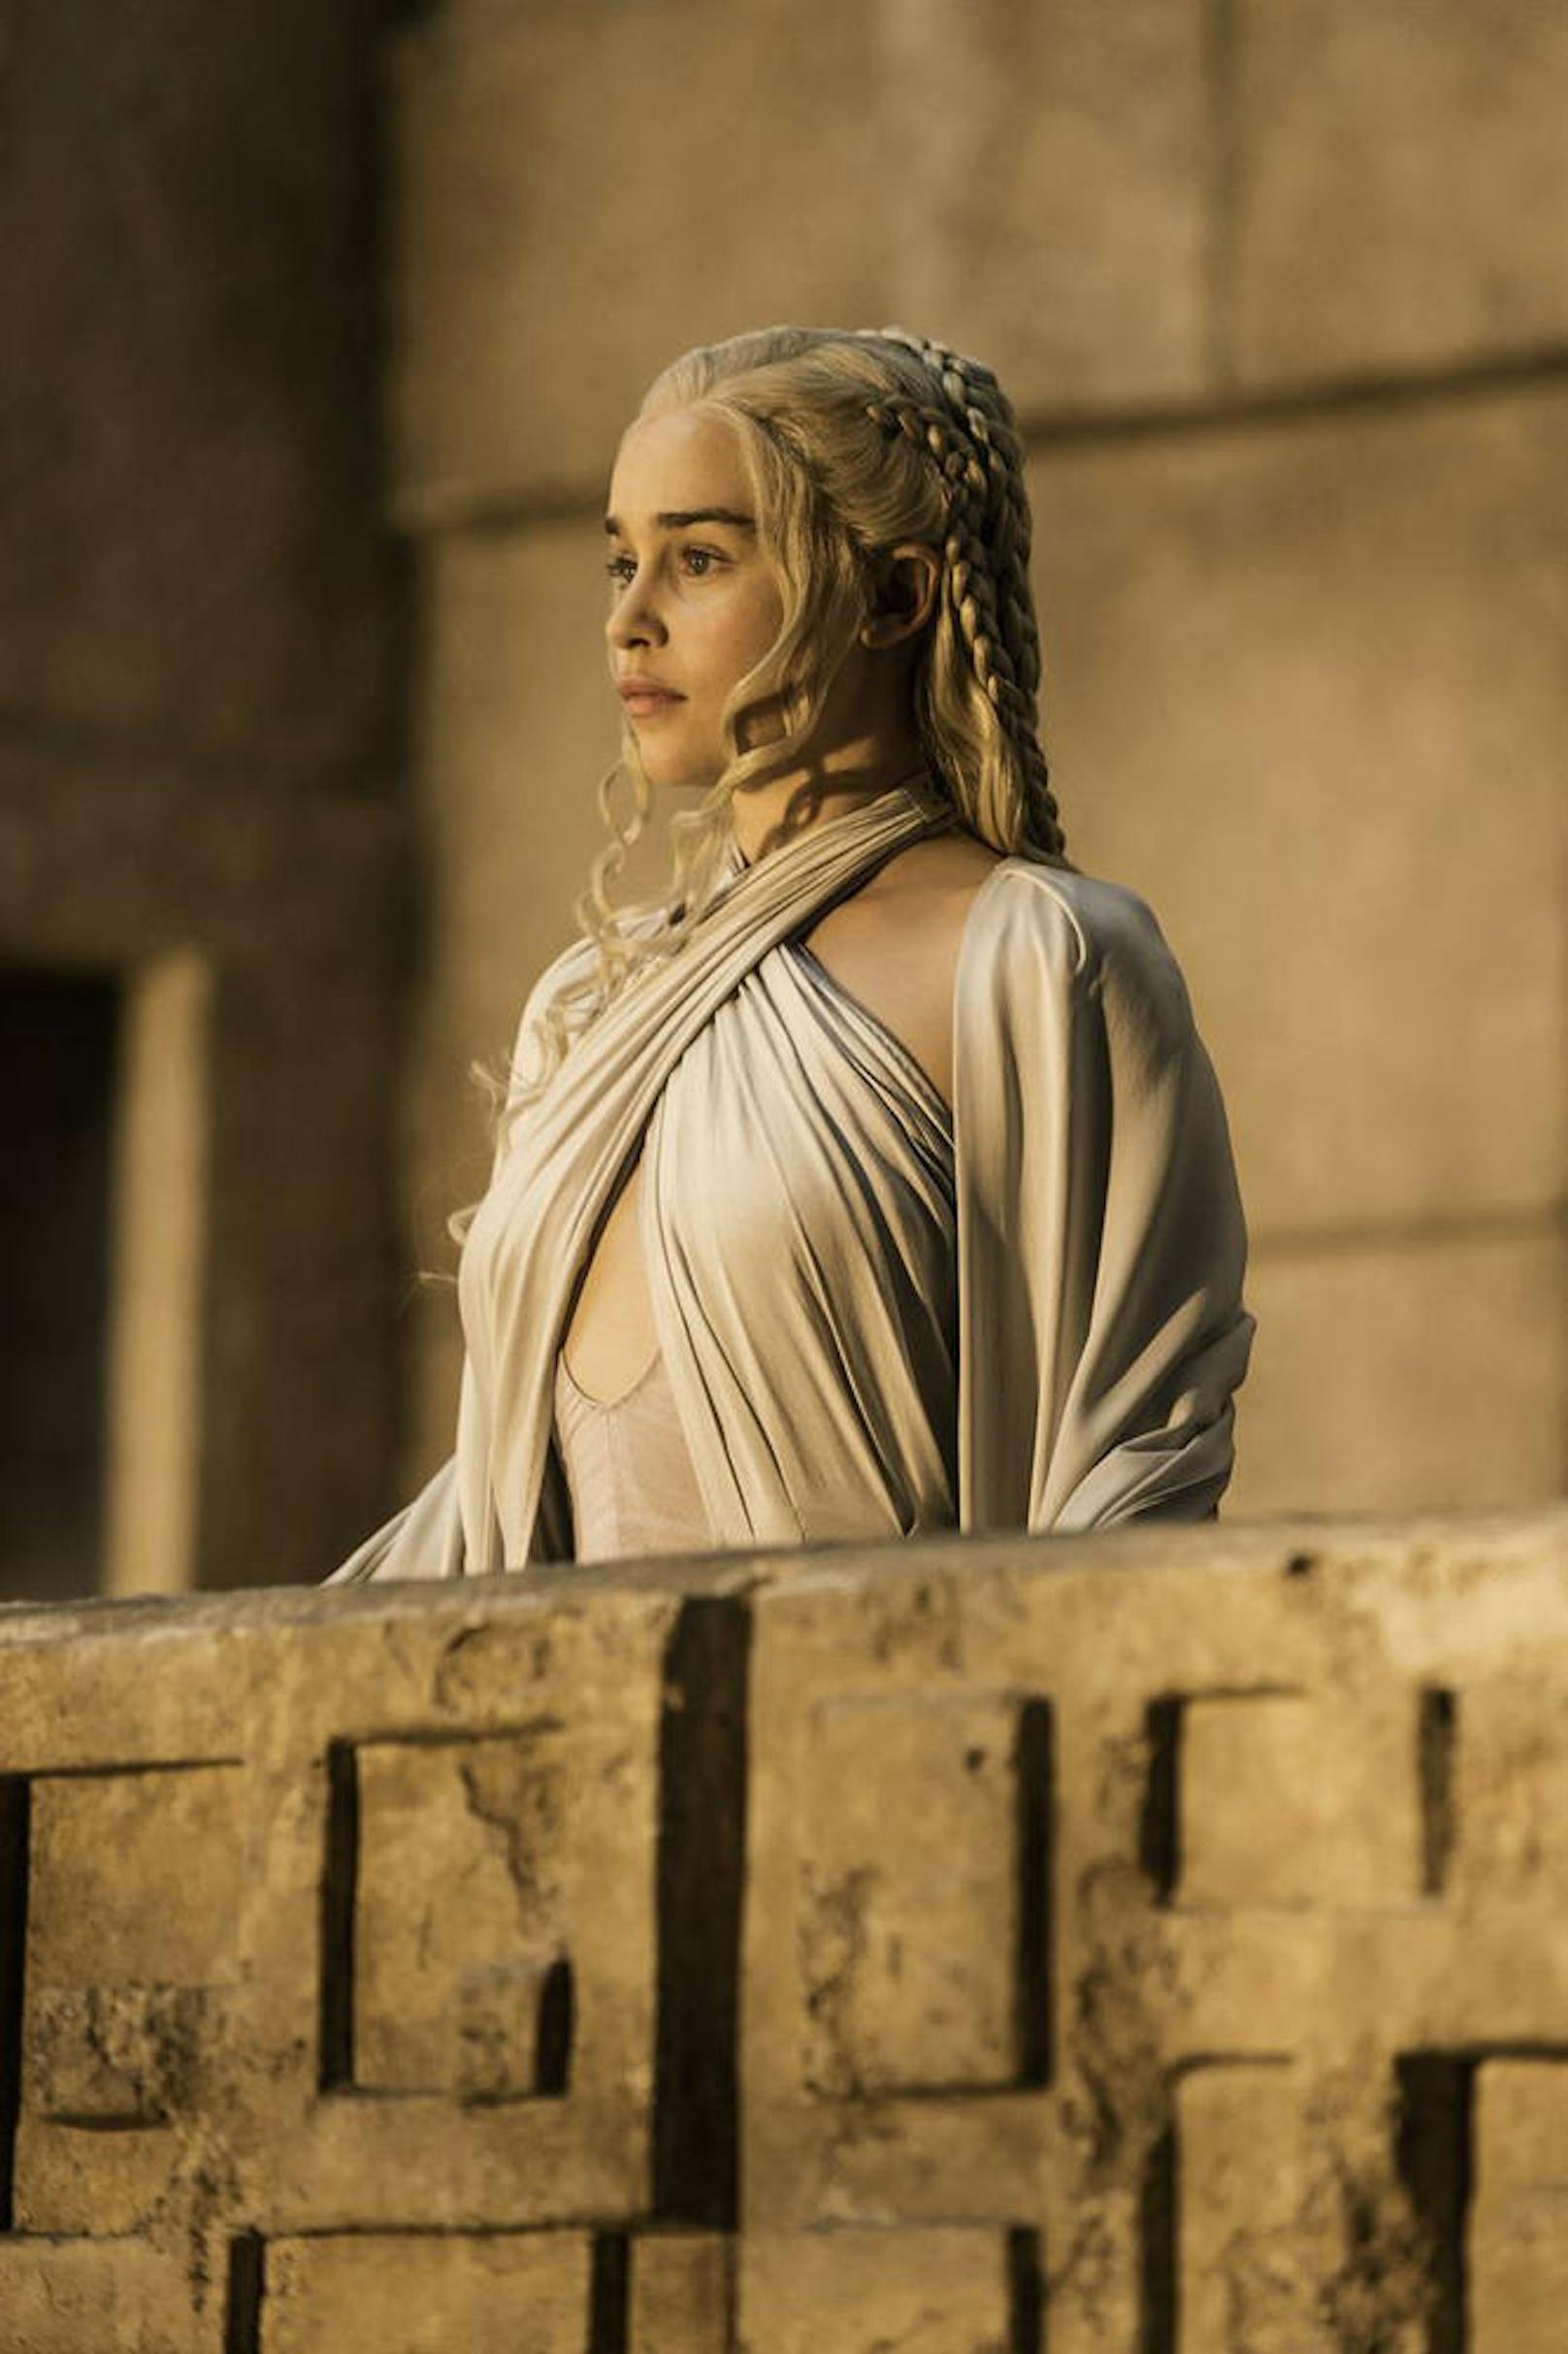 Emilia Clarke in "Game of Thrones"